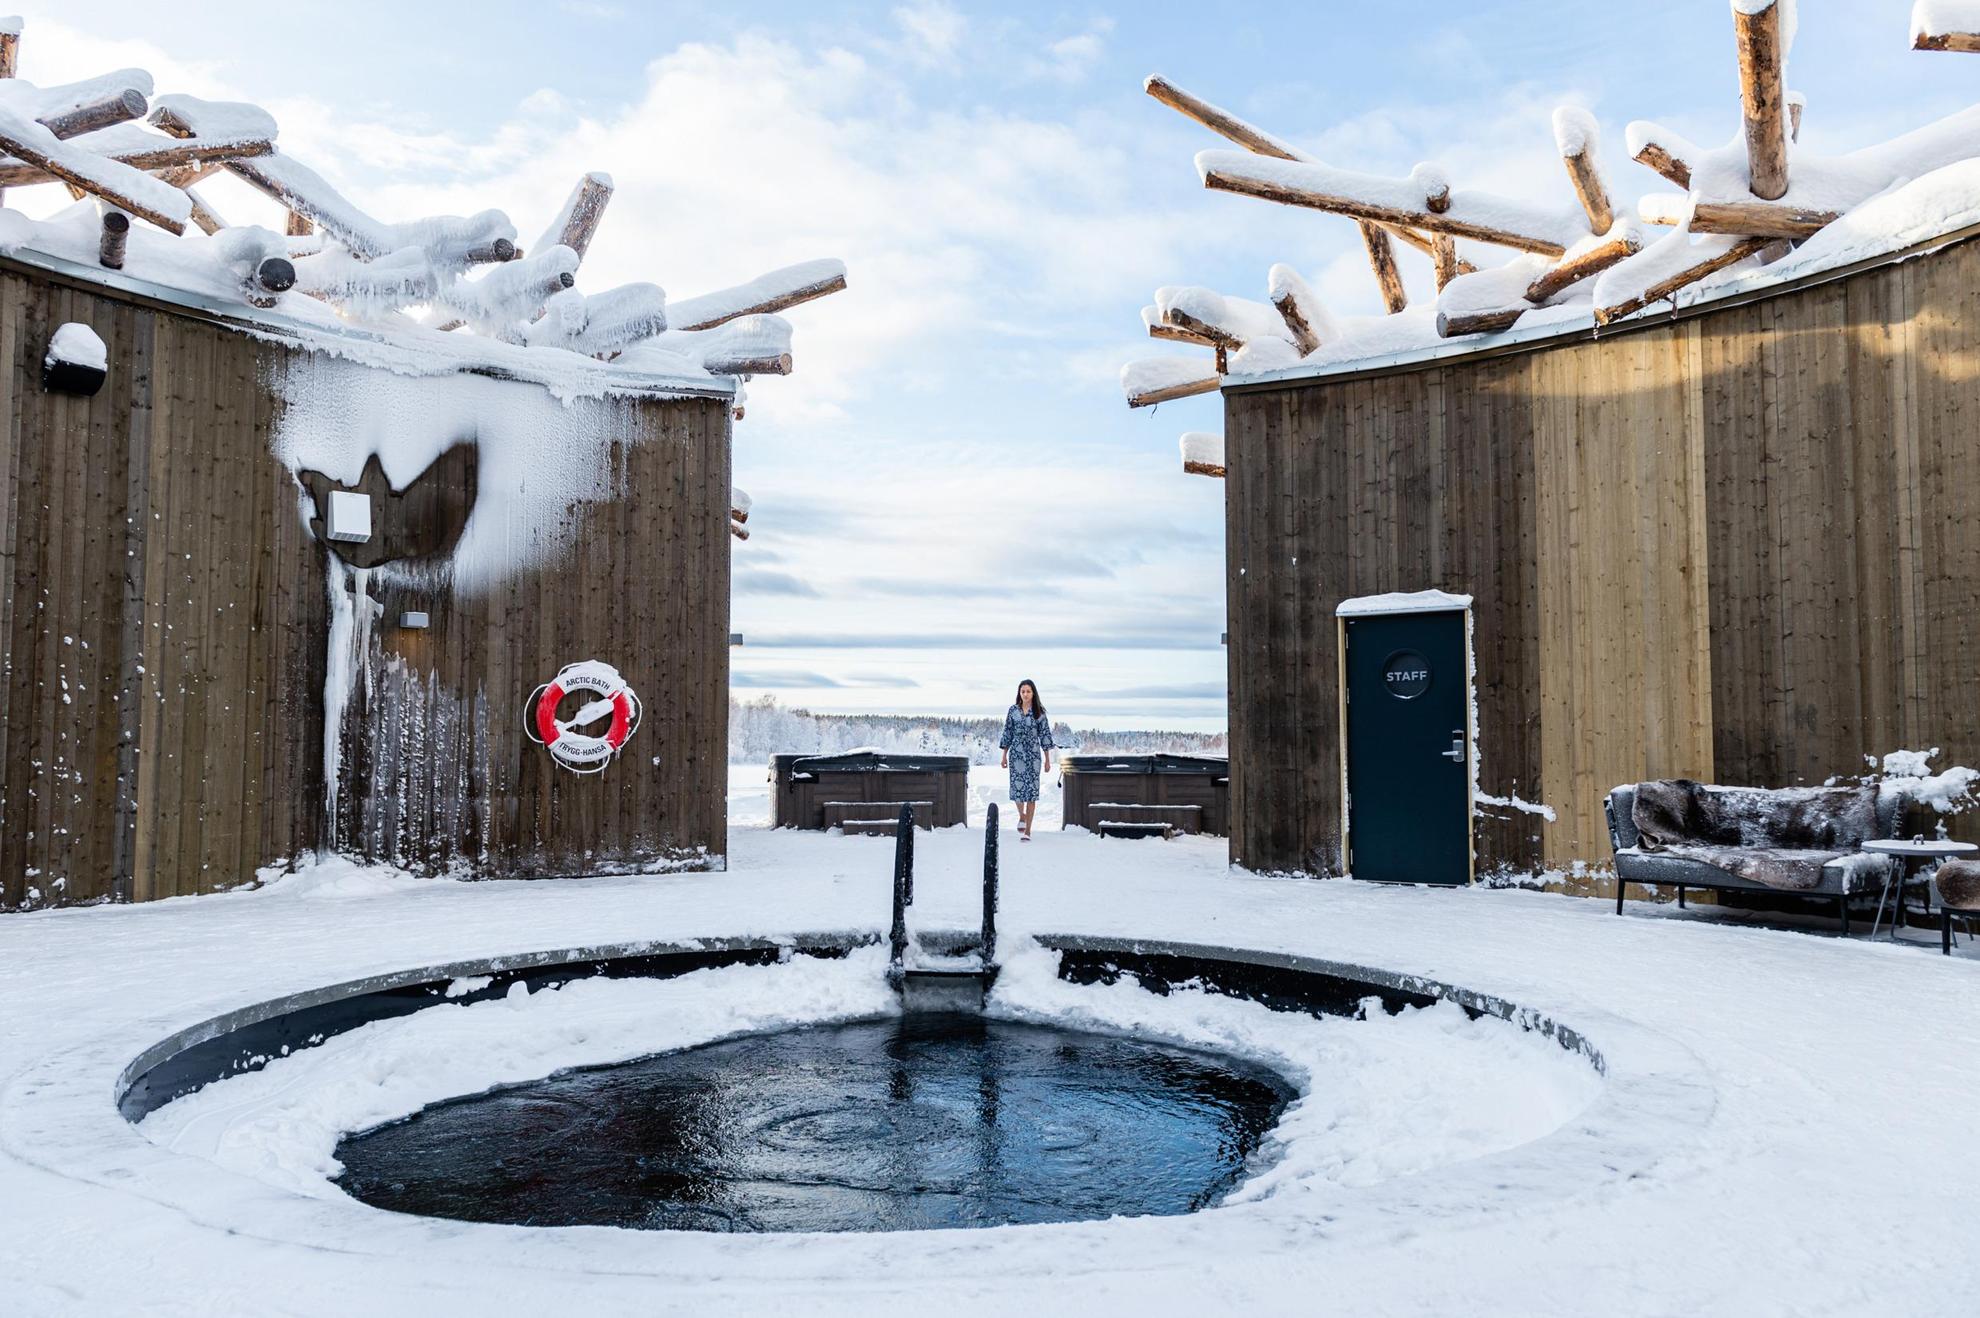 Eine Frau geht auf ein offenes Bad im Schnee zu, das von einem Holzgebäude umgeben ist.